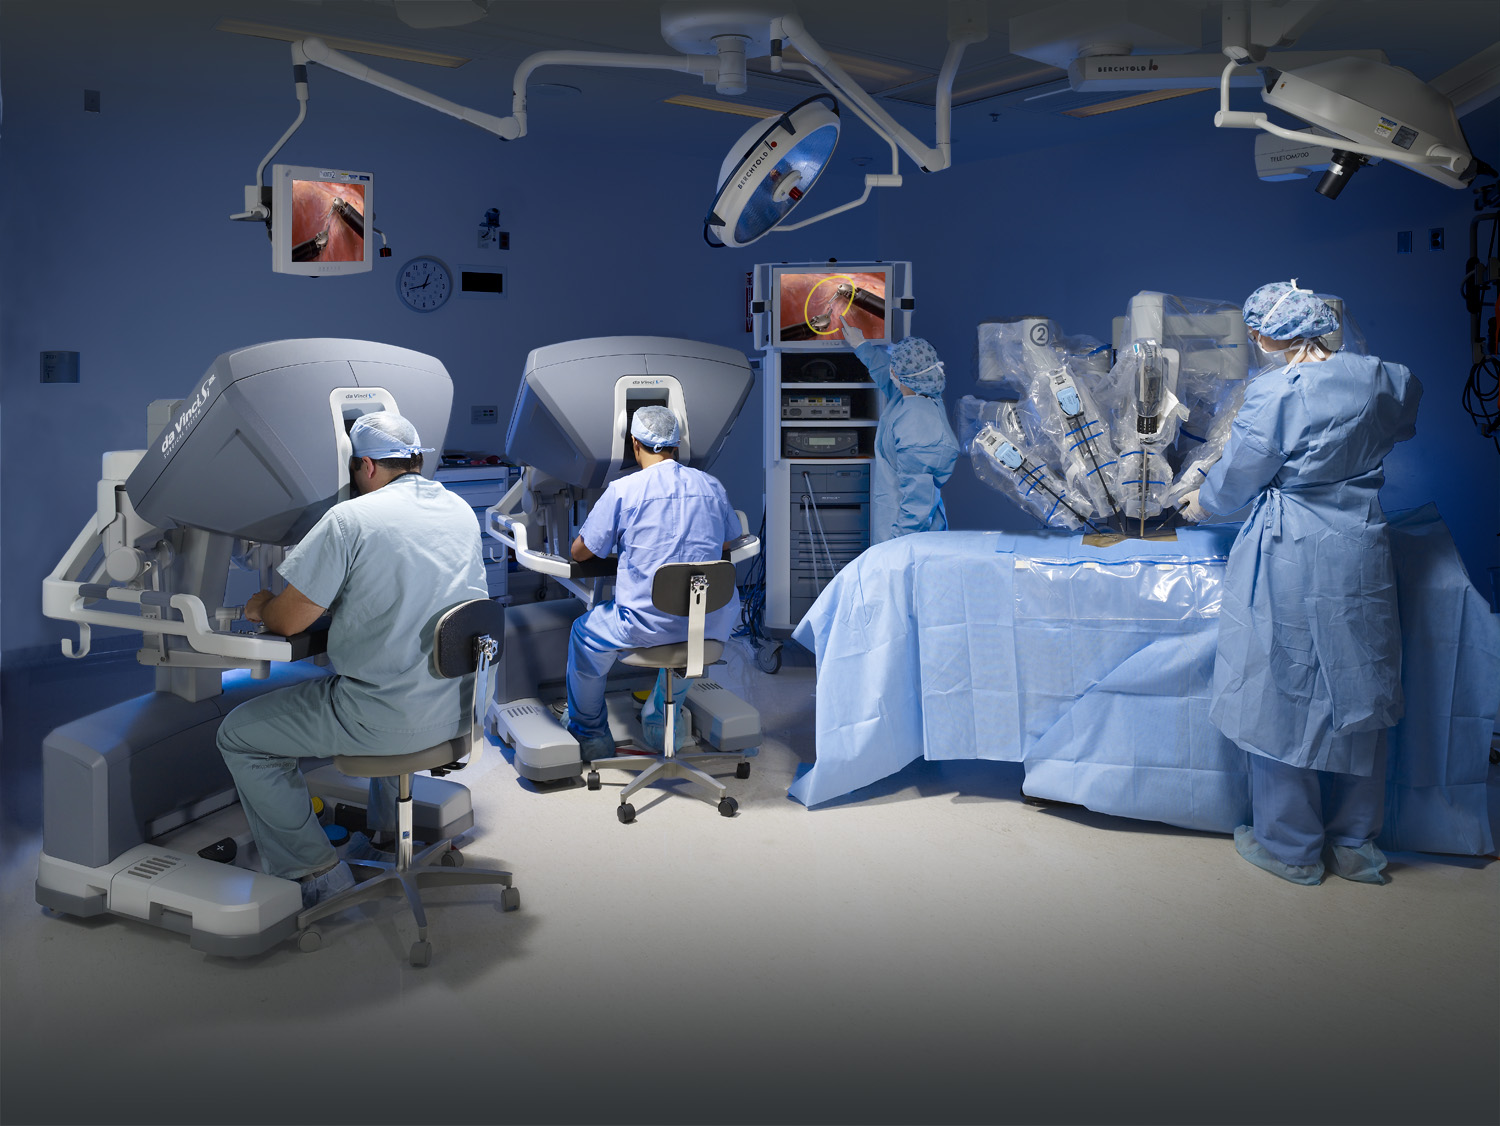 cancer de prostata operacion robotica